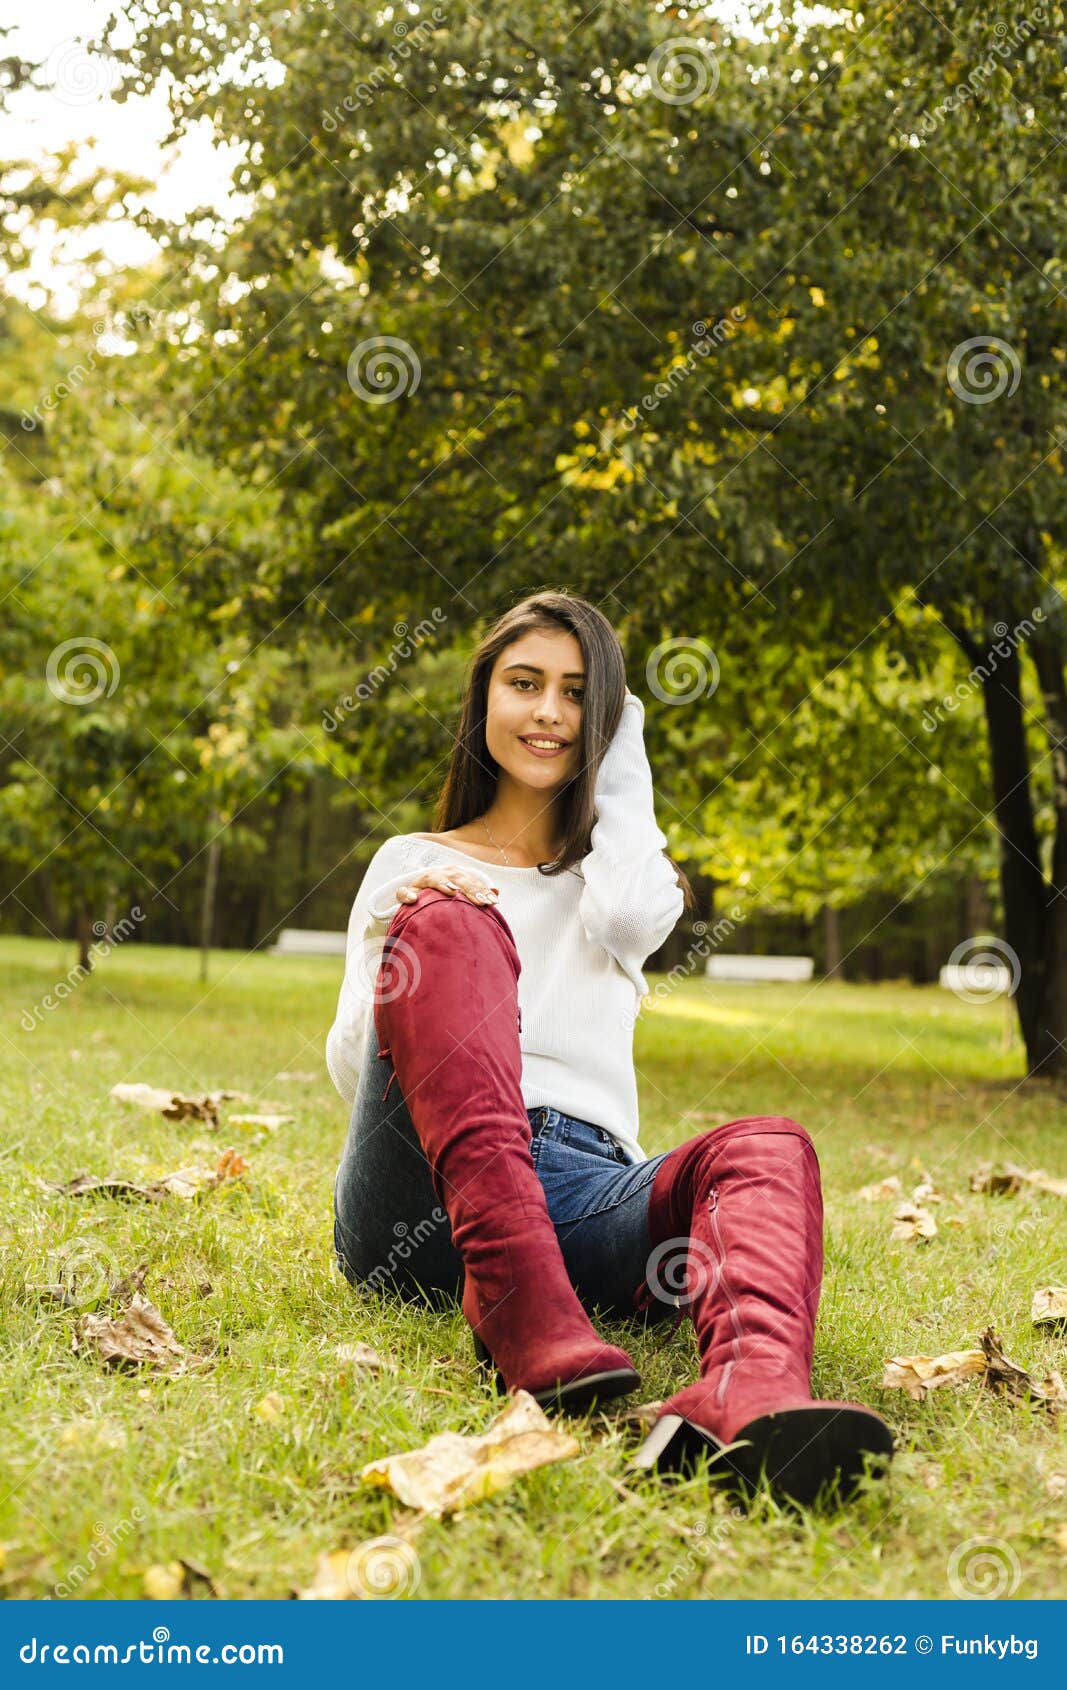 beautyfull woman outside in the park autumn sesason